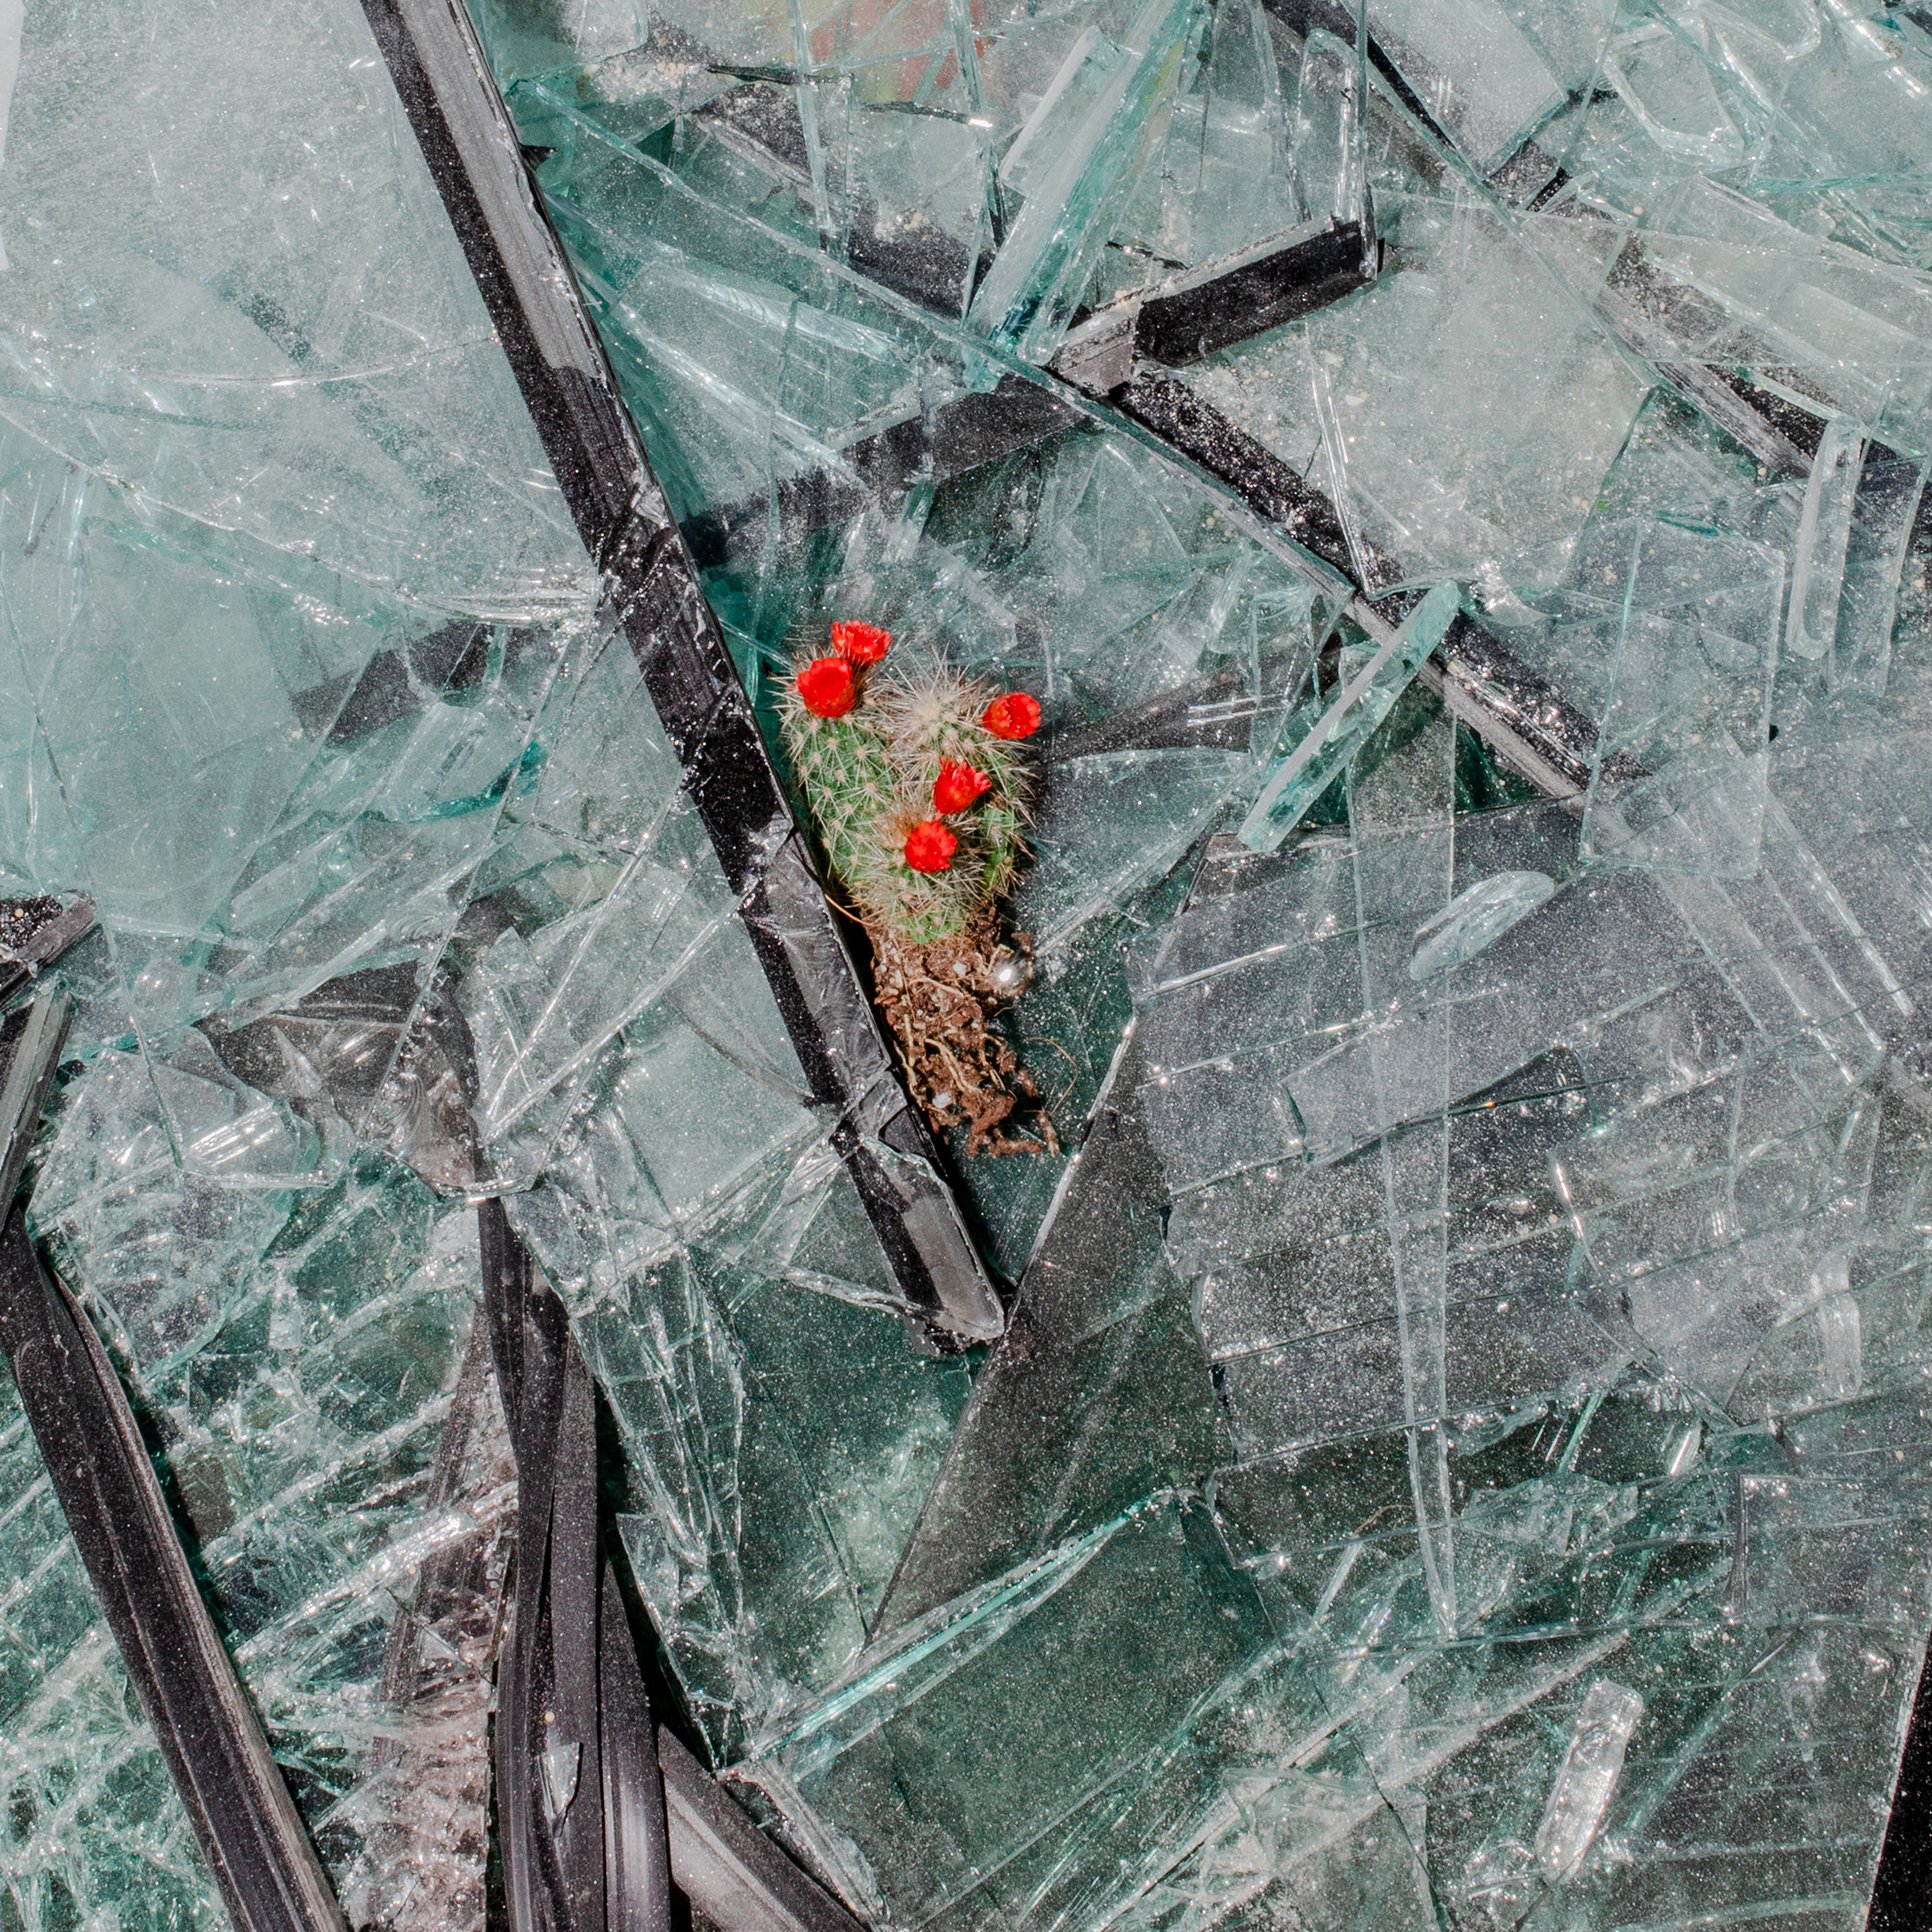 Un cactus descansa sobre vidrios rotos. El trabajo de limpieza quedó en manos de los voluntarios, con las autoridades prácticamente invisibles.